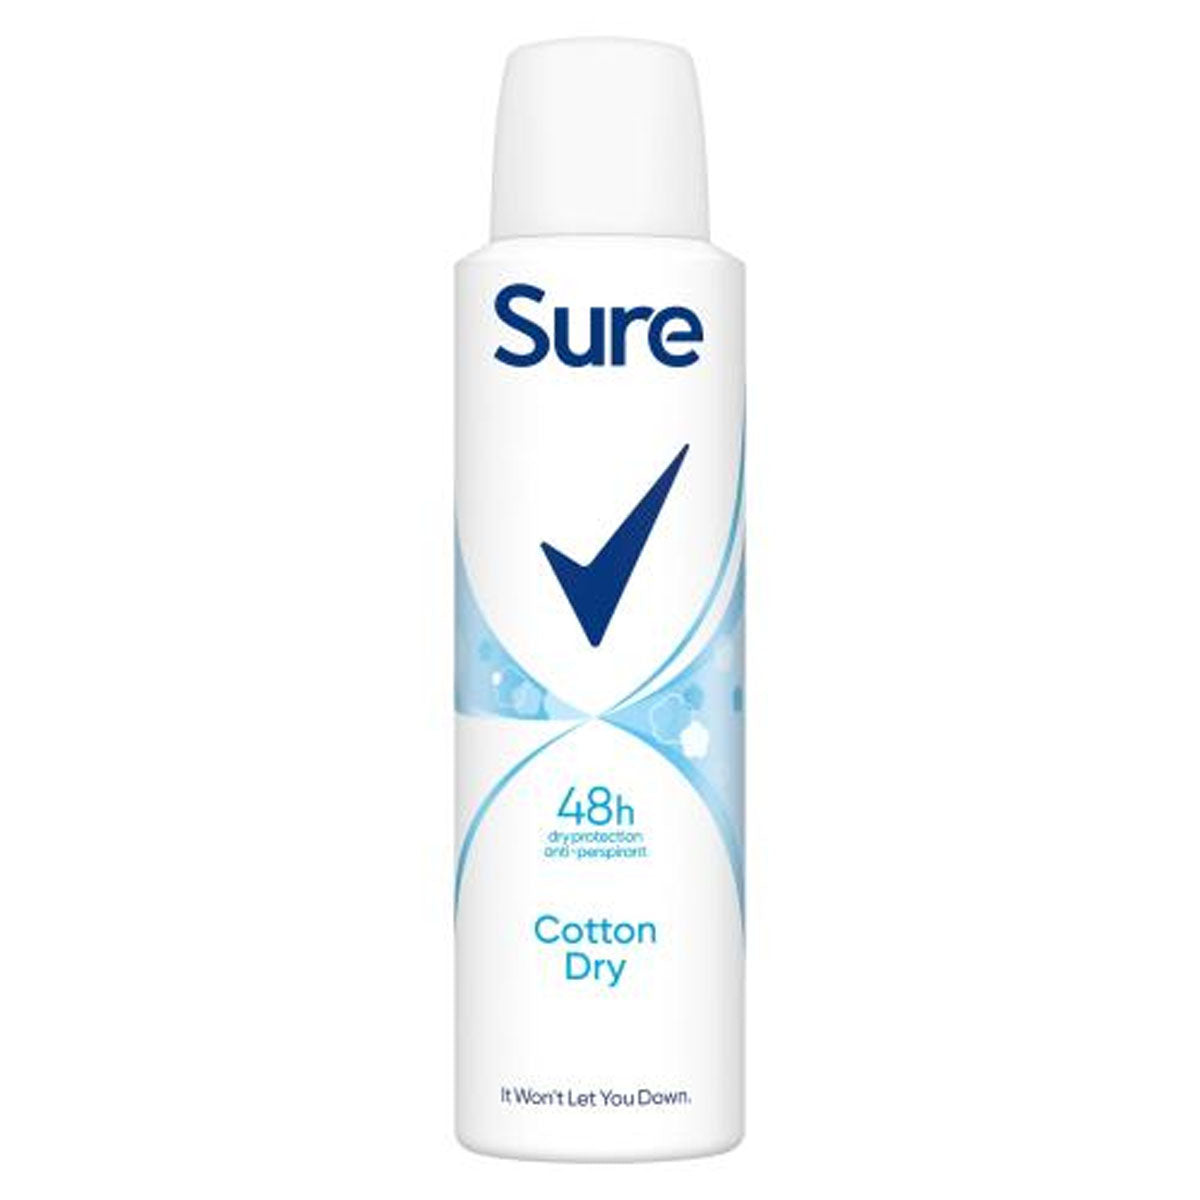 Sure - Women Anti-perspirant Deodorant Aerosol Cotton Dry - 150ml deodorant.